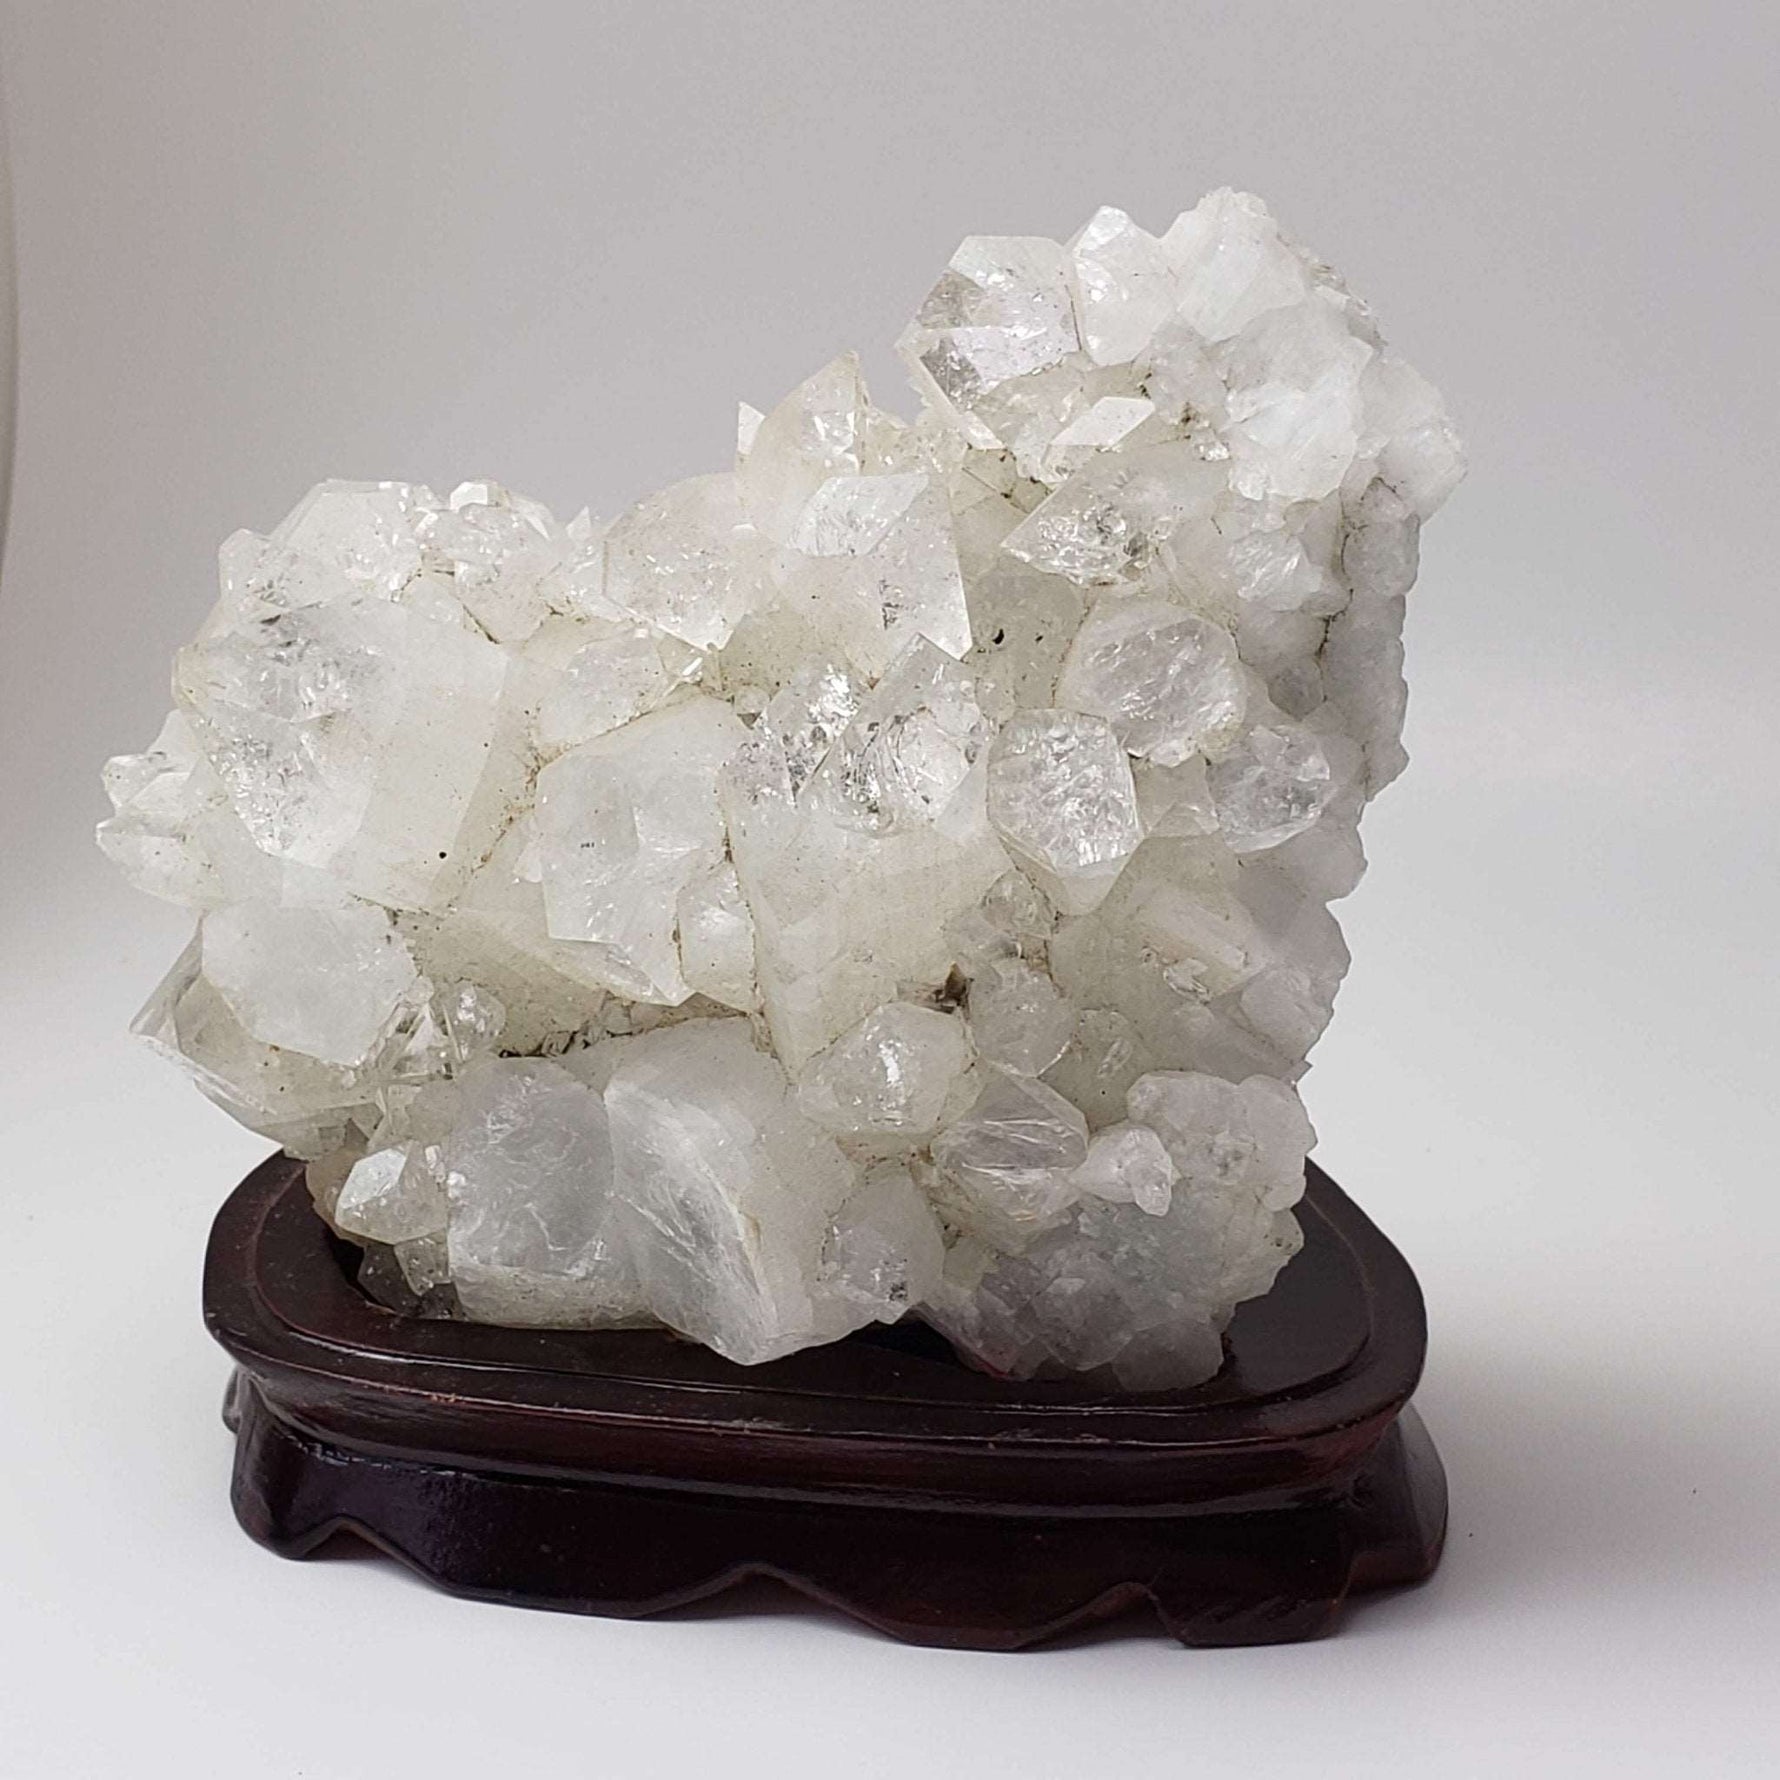 Apophyllite Crystal Cluster | 1.04kg | India